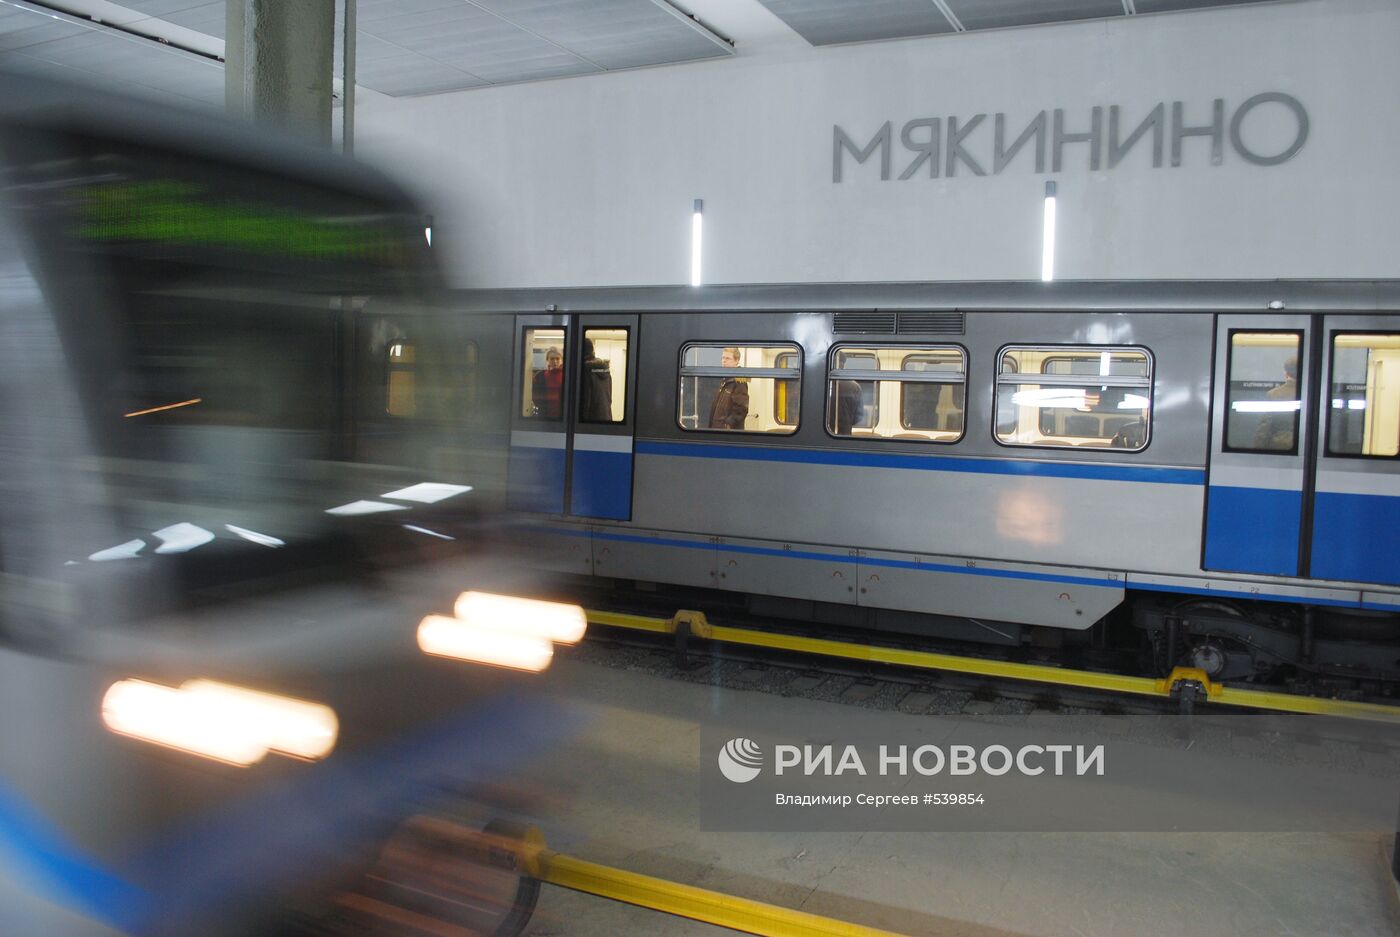 Открытие новой станции московского метро - "Мякинино"